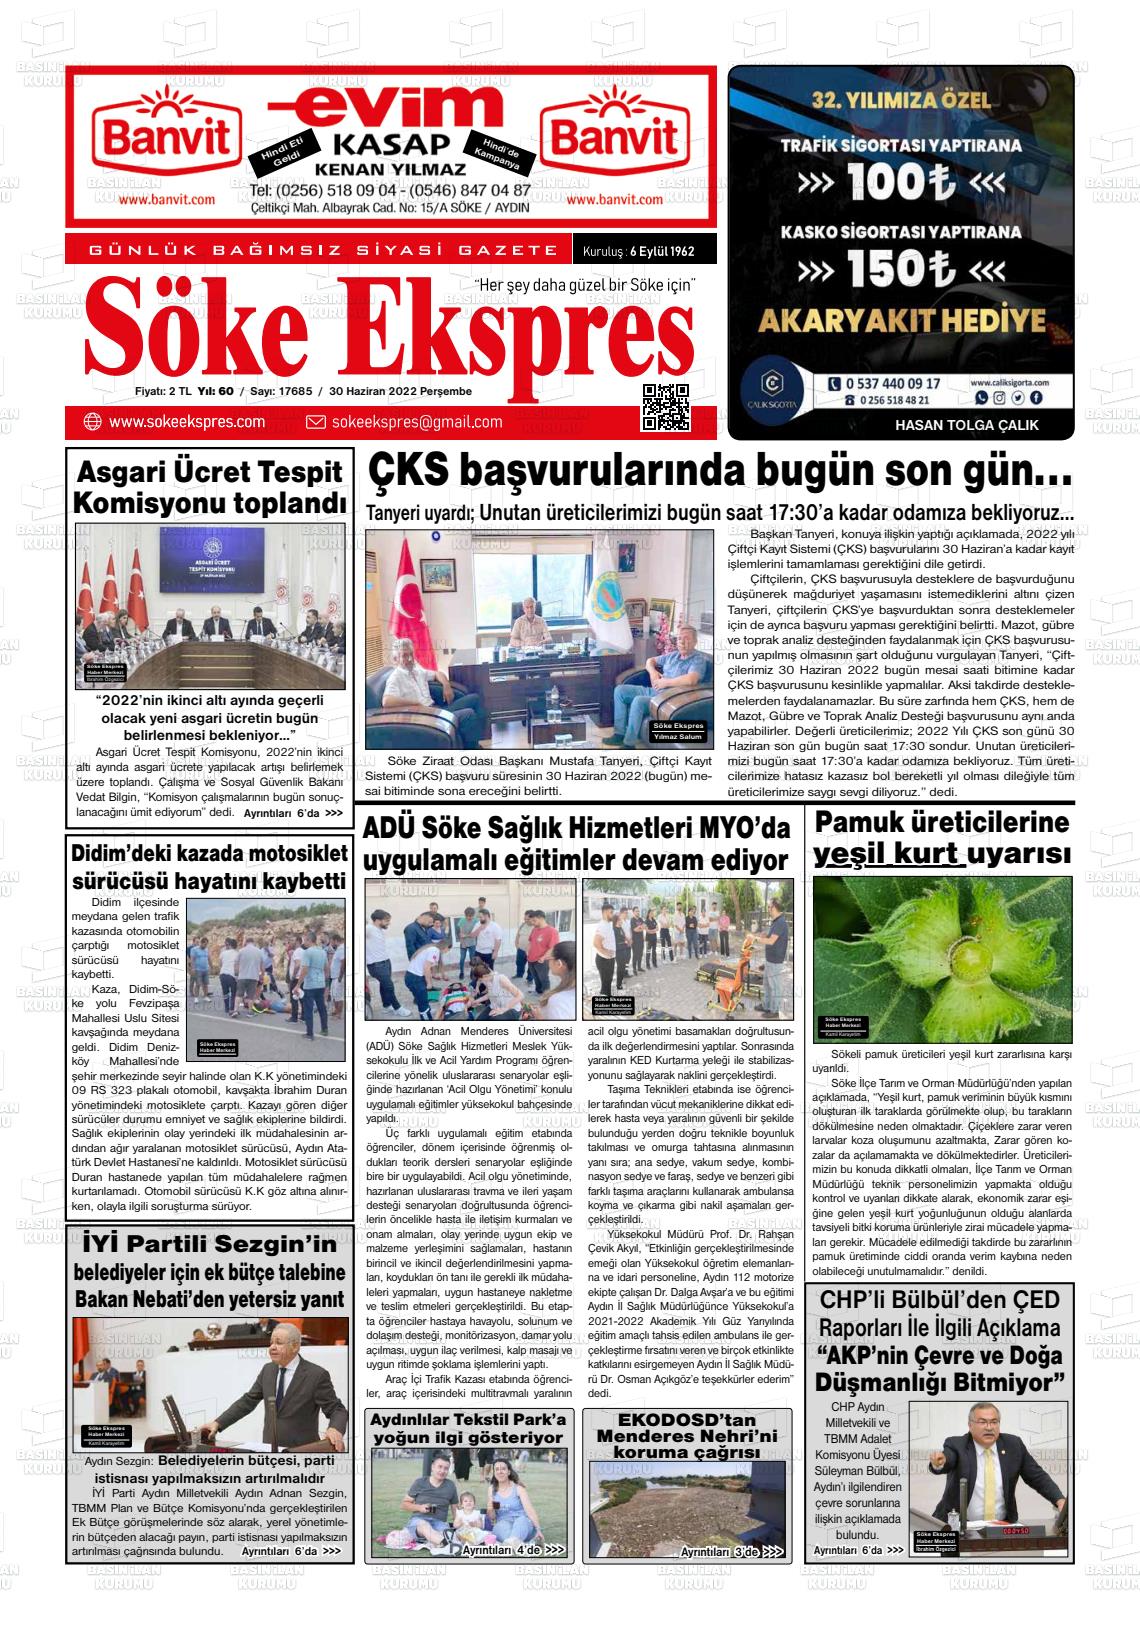 30 Haziran 2022 Söke Ekspres Gazete Manşeti